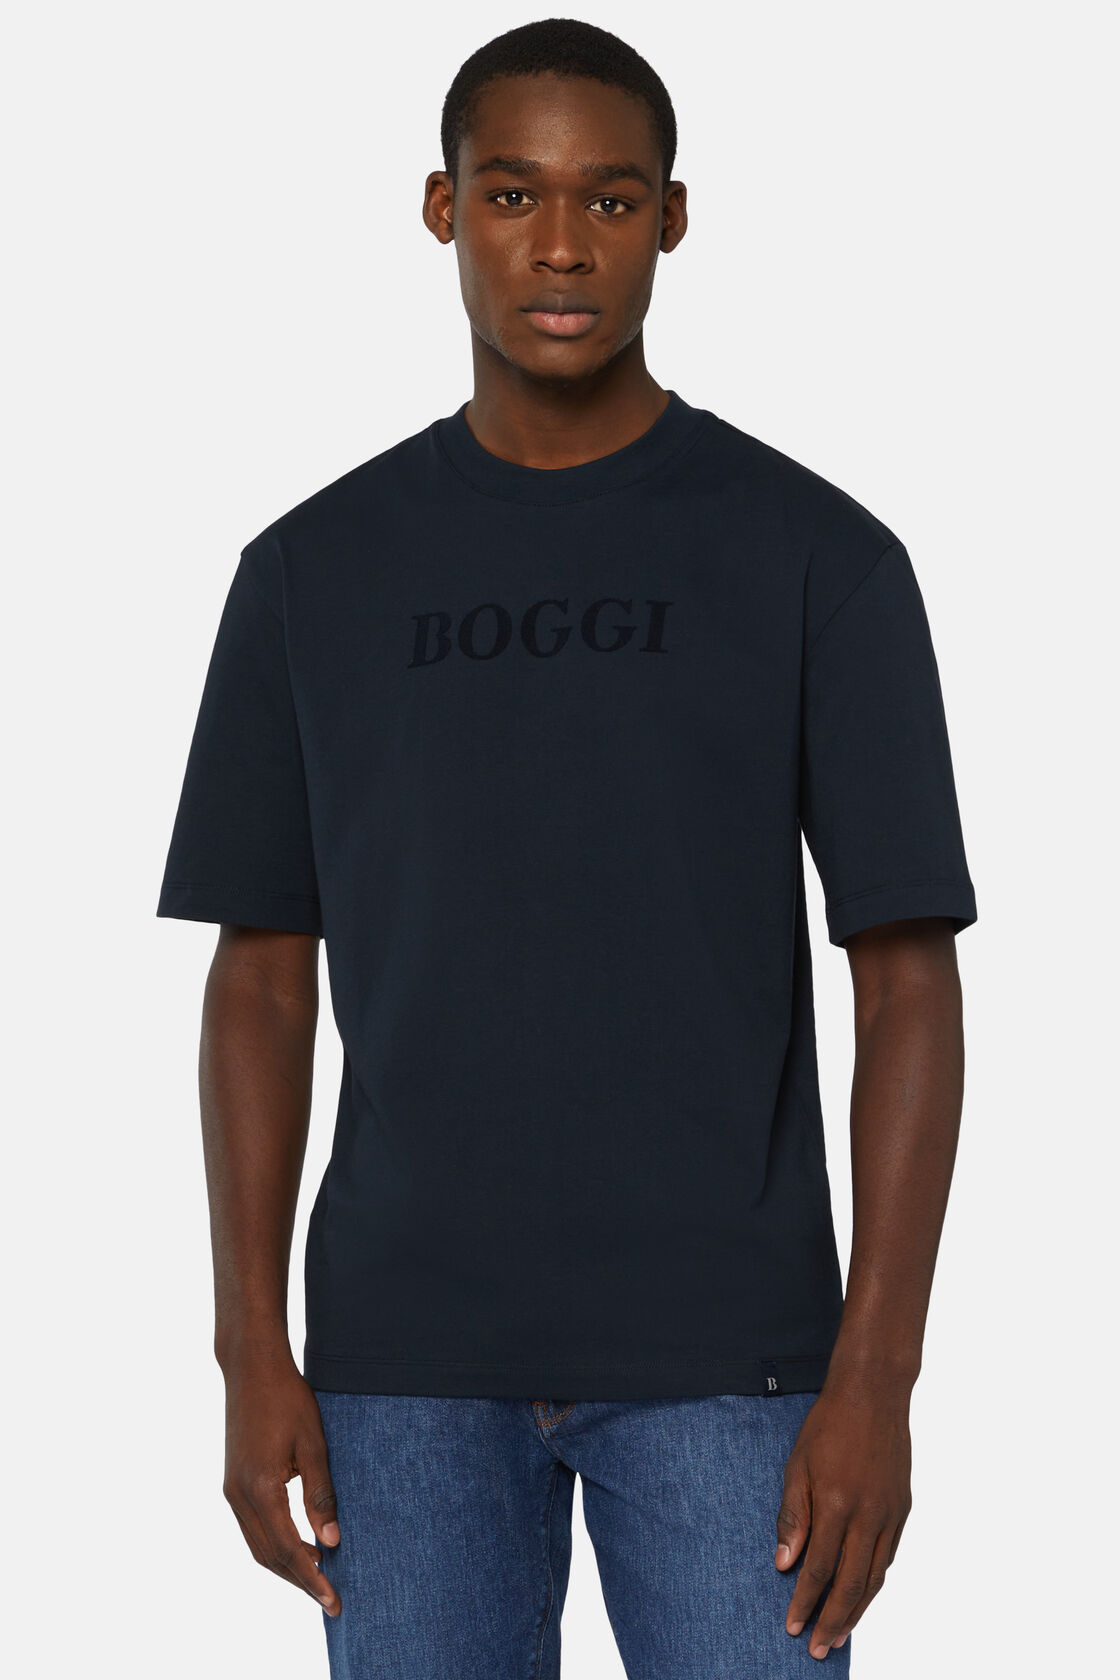 T-shirt de Algodão, Navy blue, hi-res